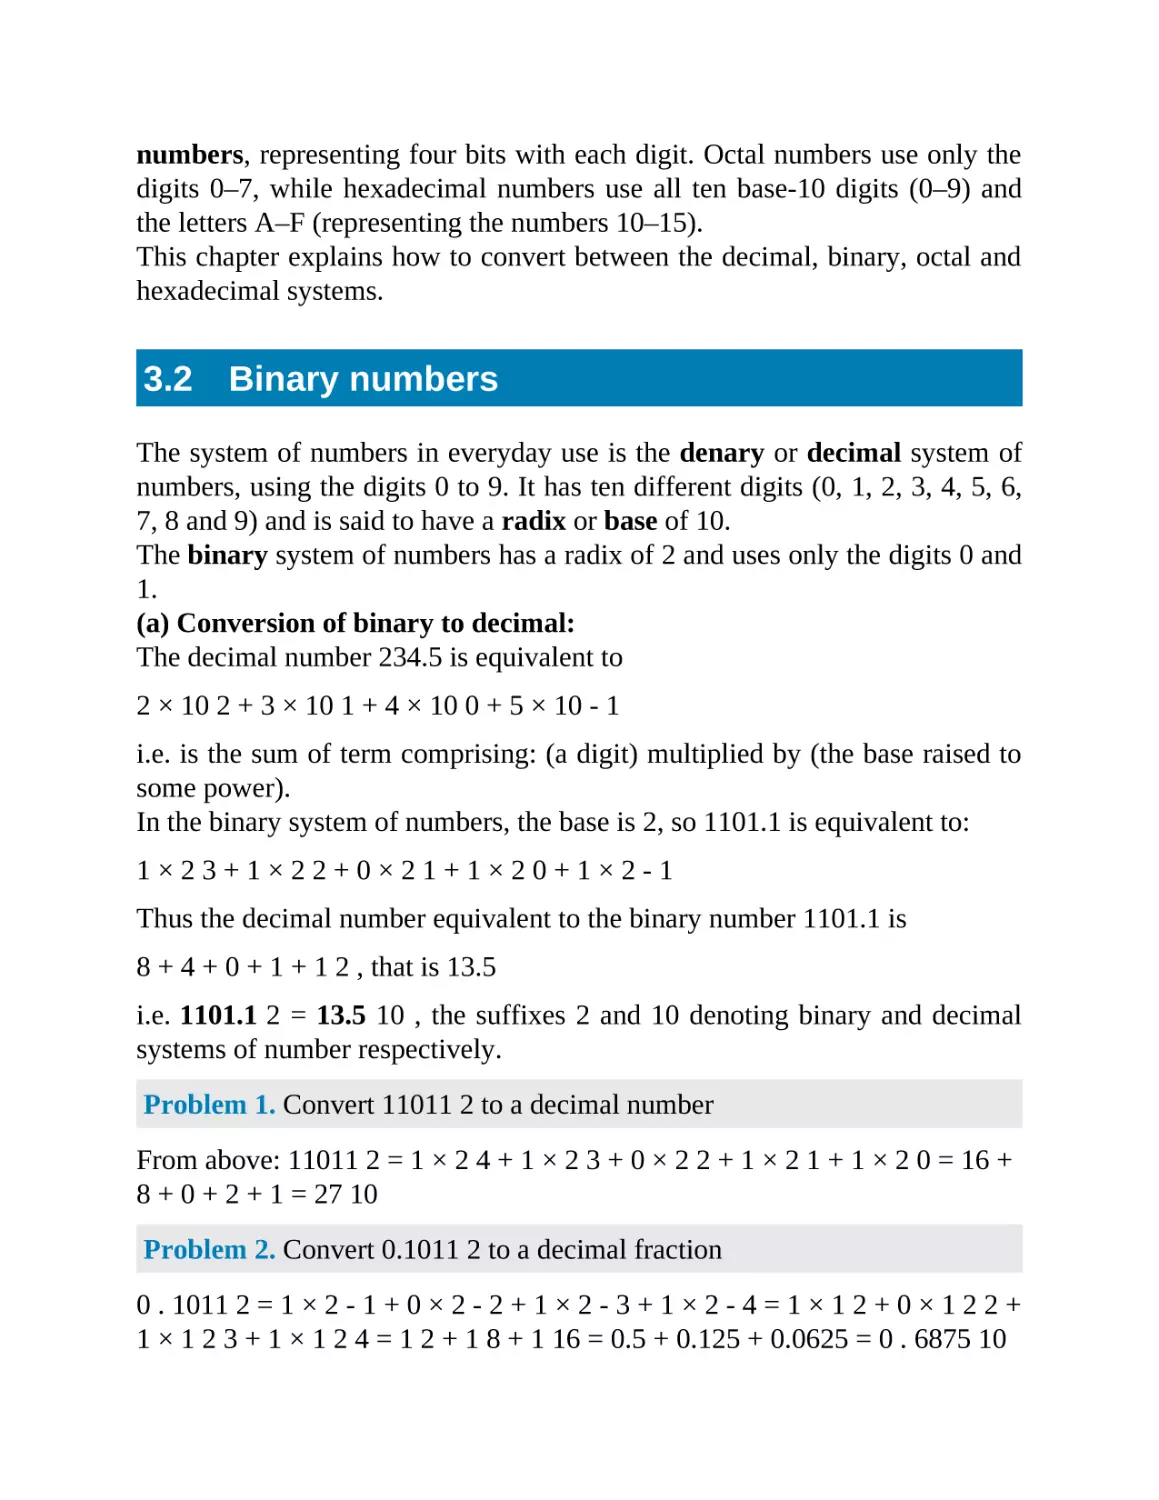 3.2 Binary numbers